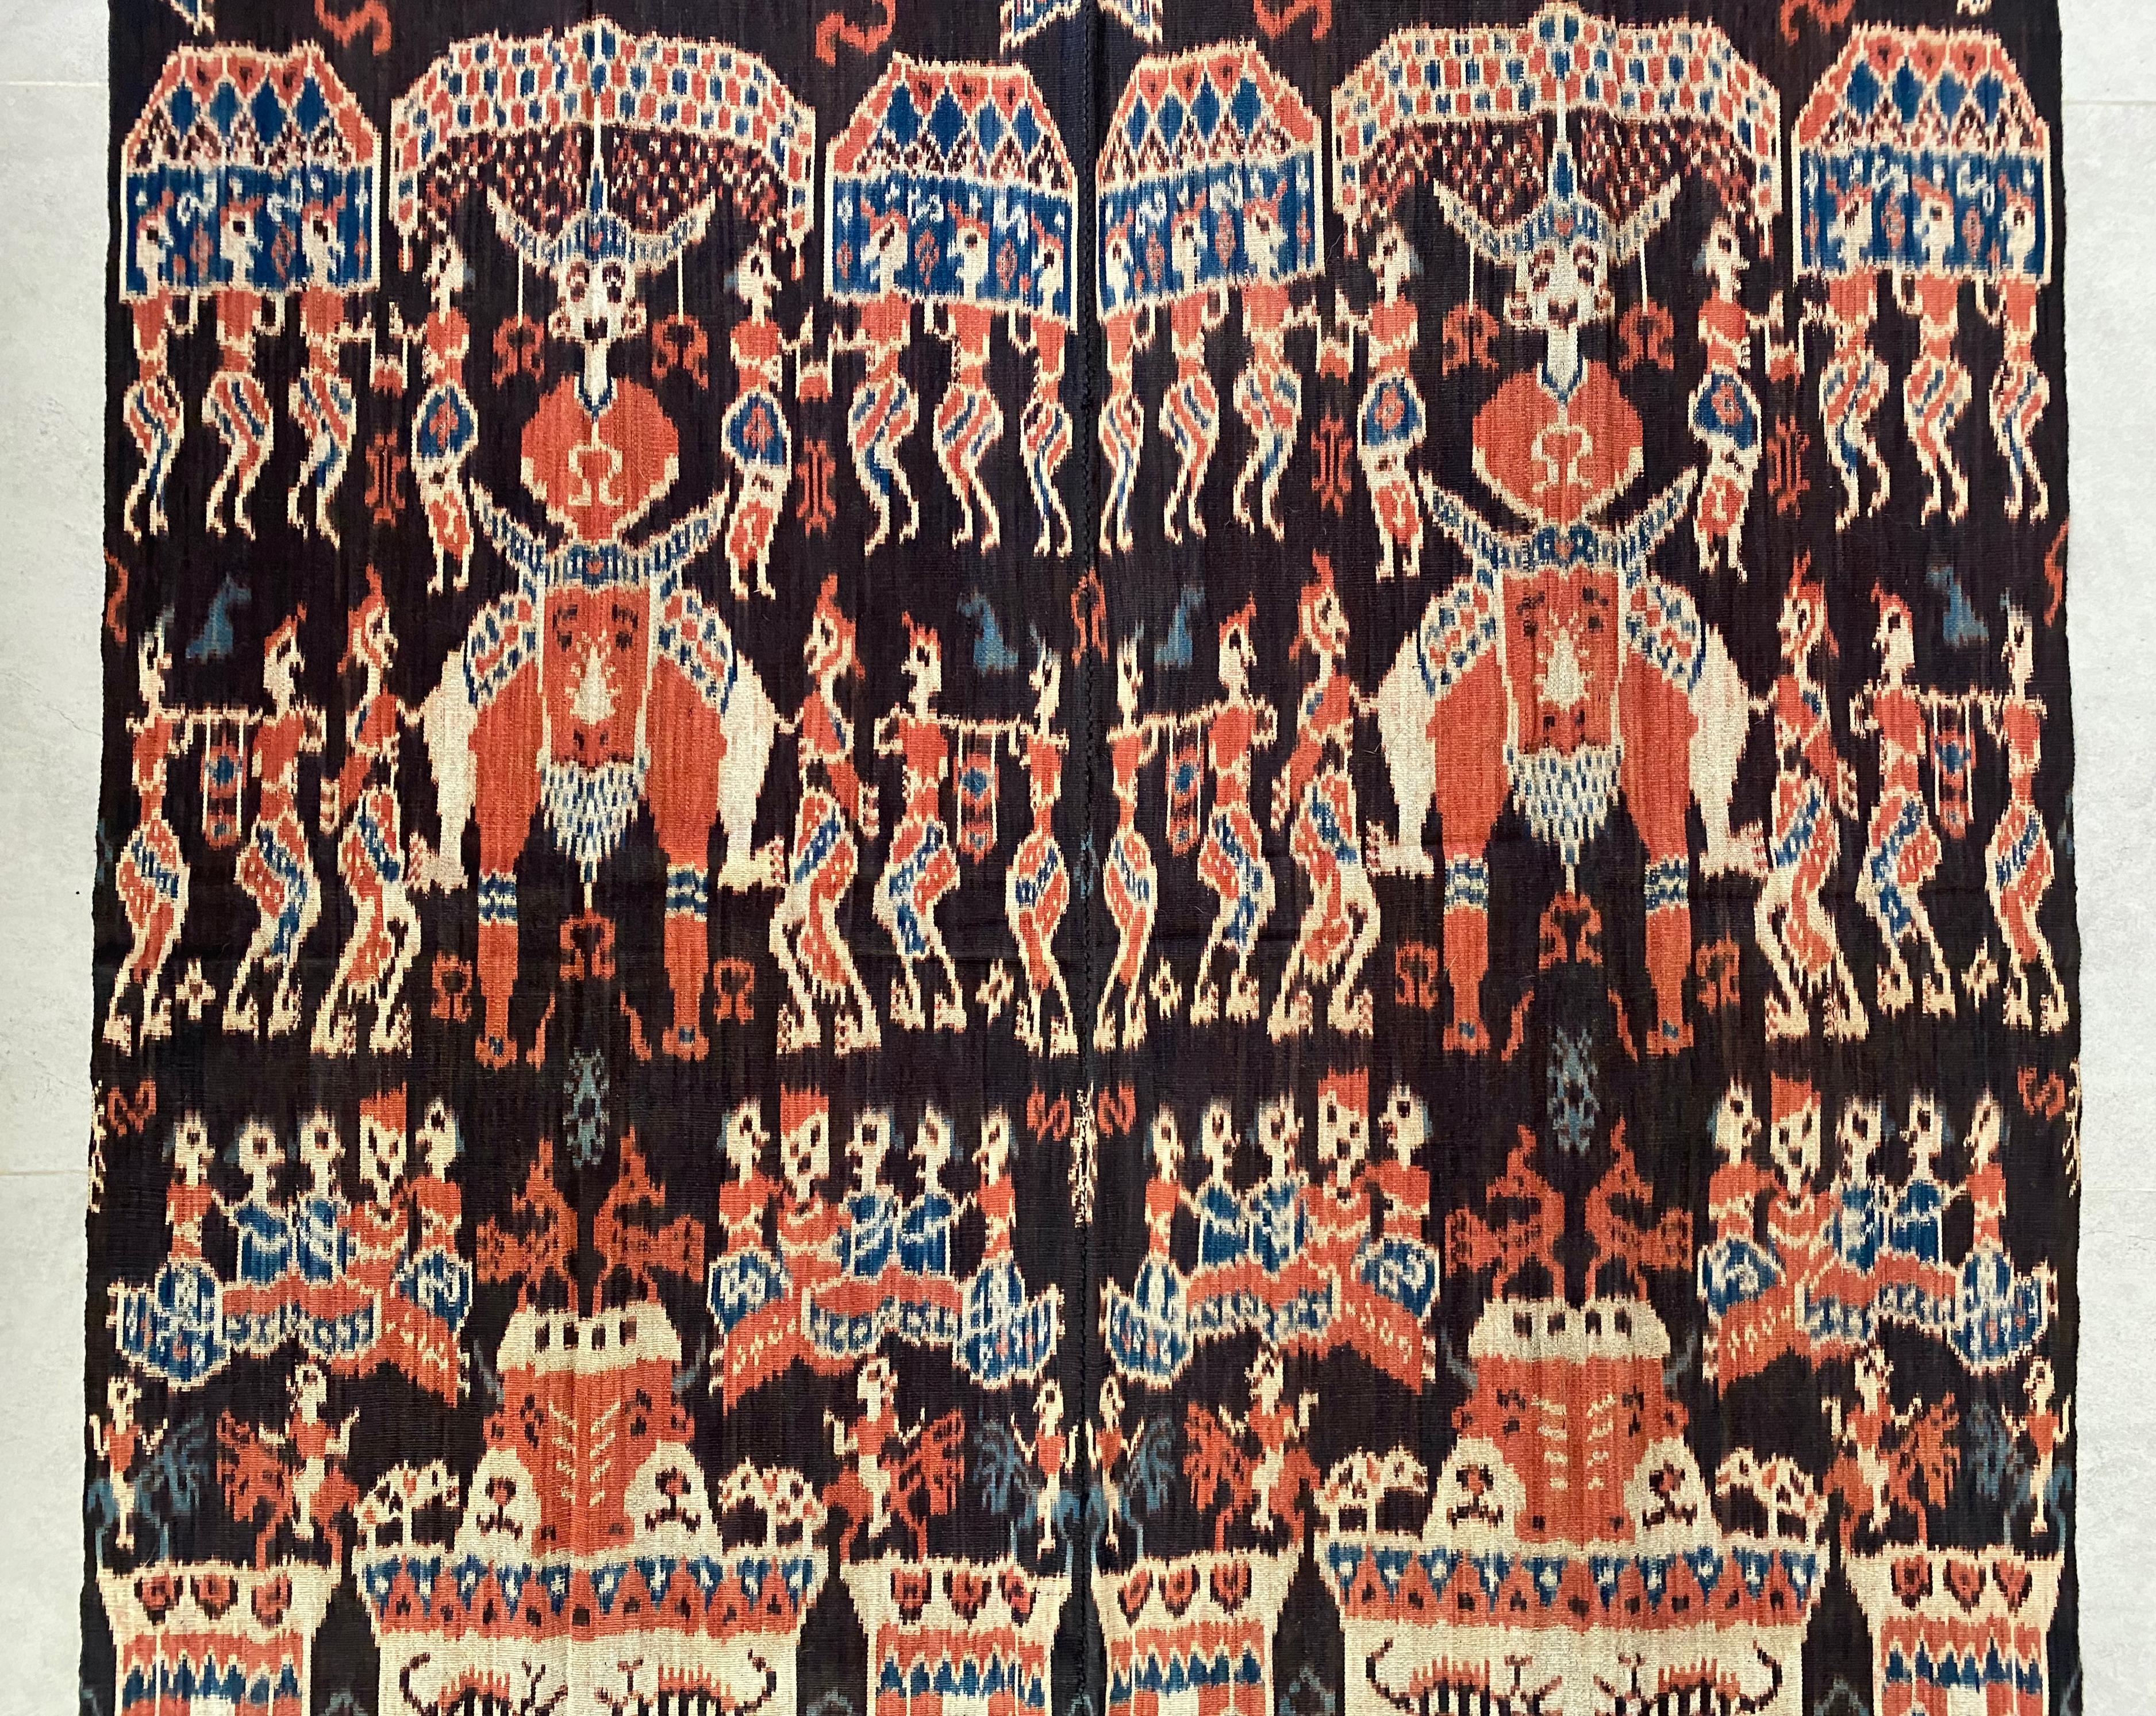 Dieses Ikat-Textil stammt von der Insel Sumba in Indonesien. Es wird mit natürlich gefärbten Garnen nach einer seit Generationen überlieferten Methode handgewebt. Es zeigt einen überwiegend dunkelblauen Hintergrund mit orangefarbenen Verzierungen